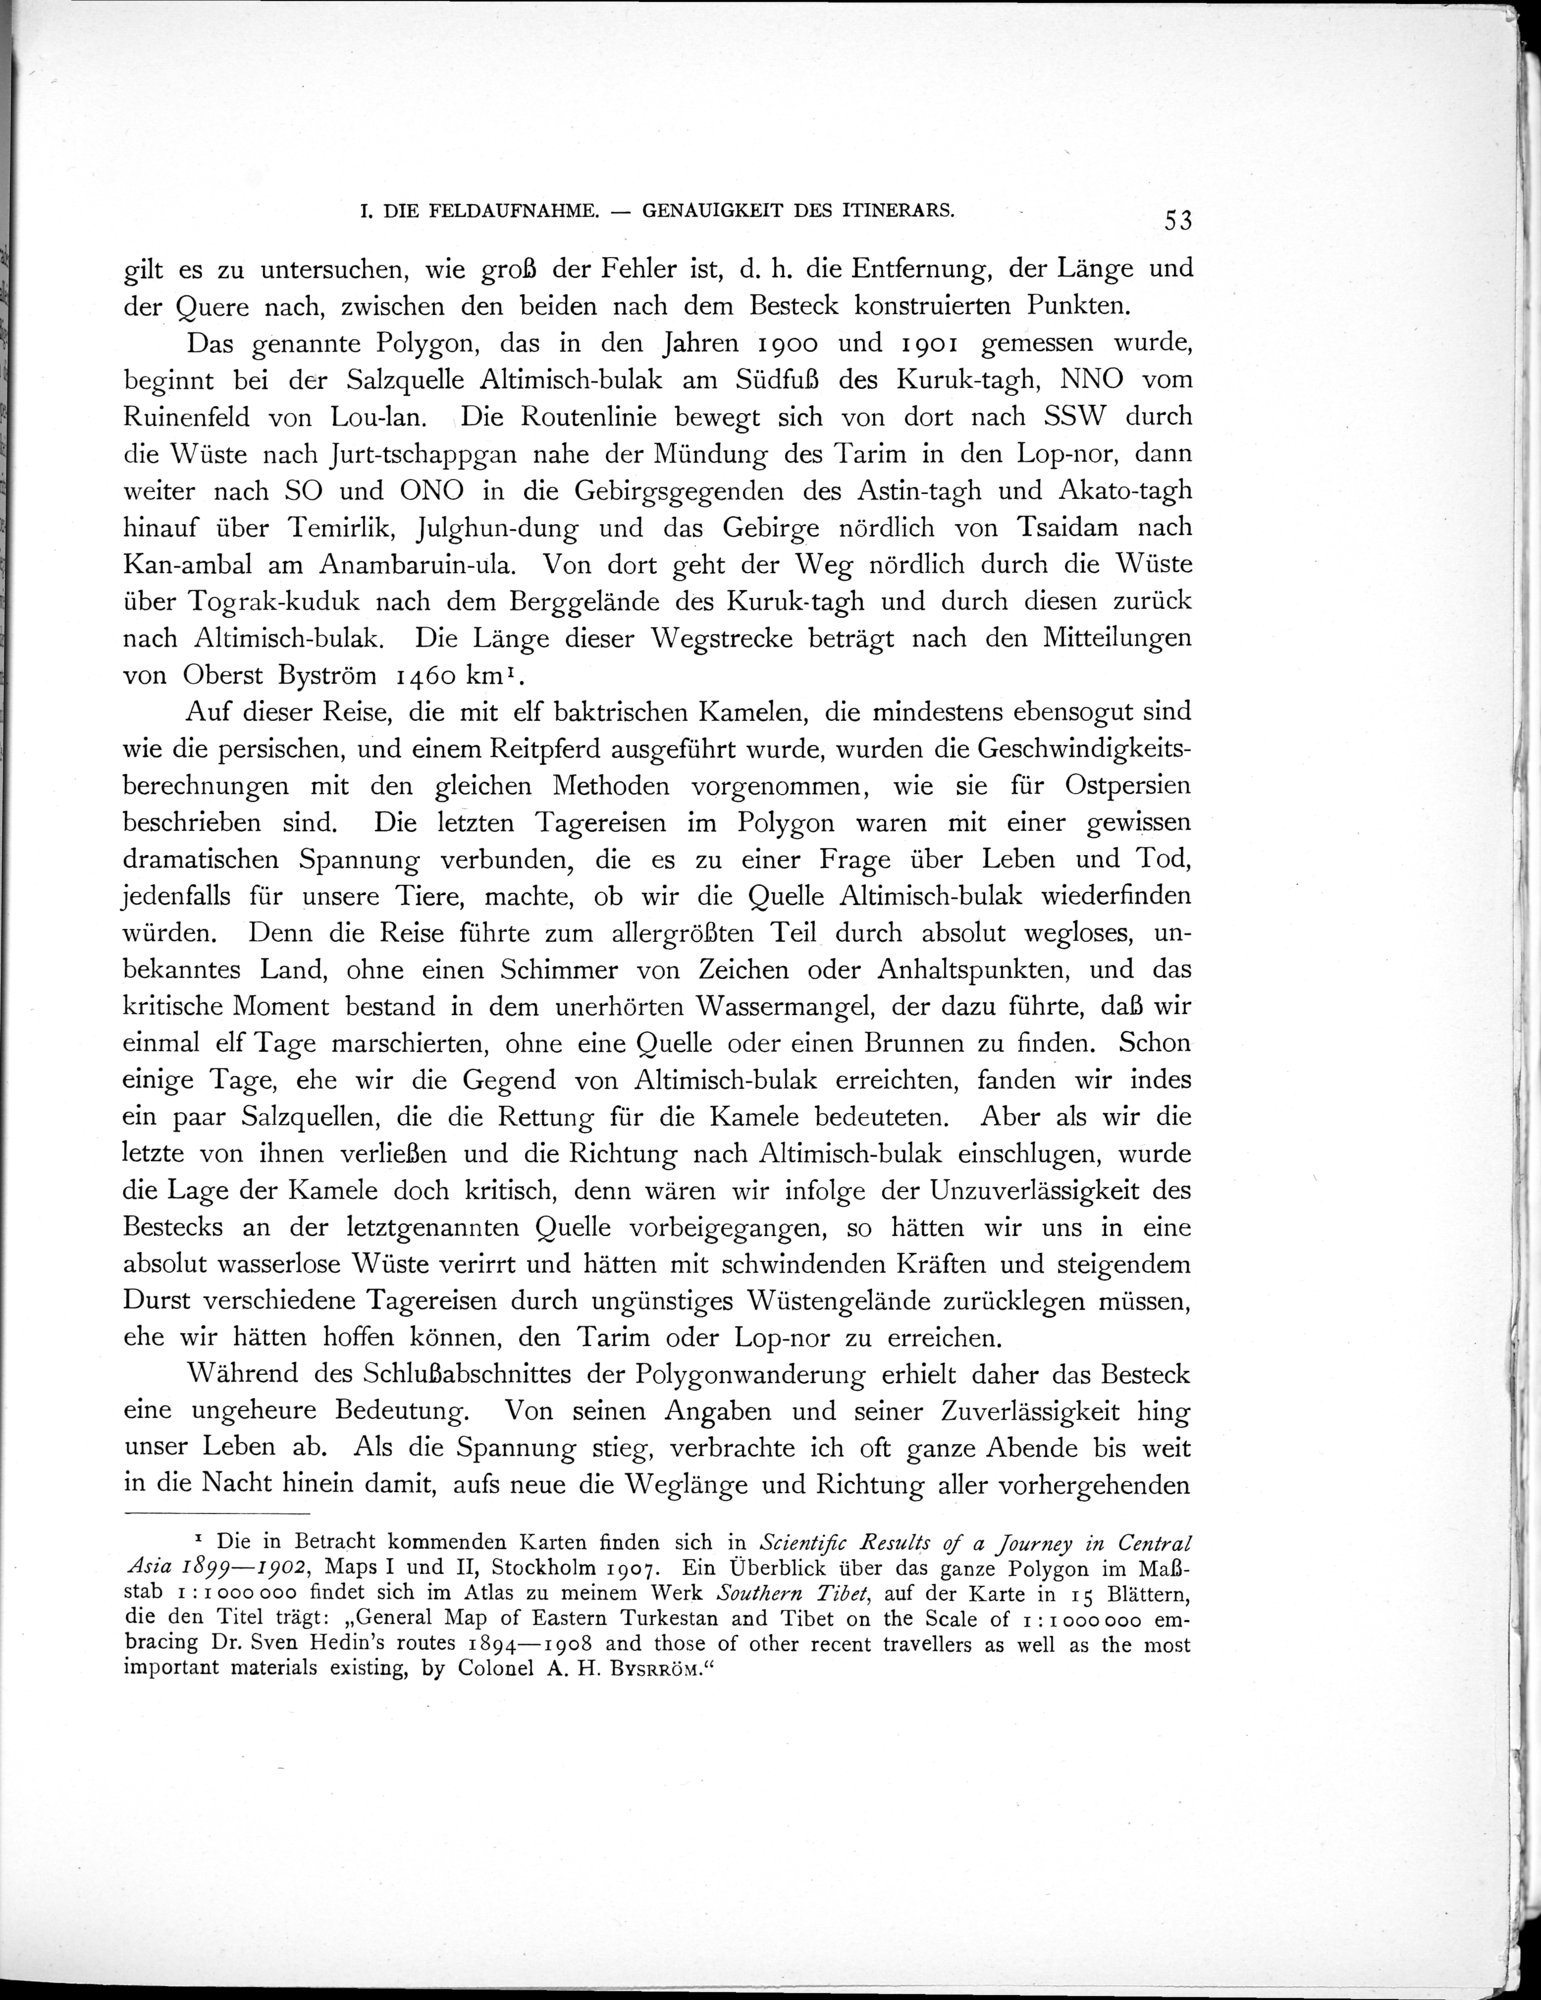 Eine Routenaufnahme durch Ostpersien : vol.2 / Page 105 (Grayscale High Resolution Image)